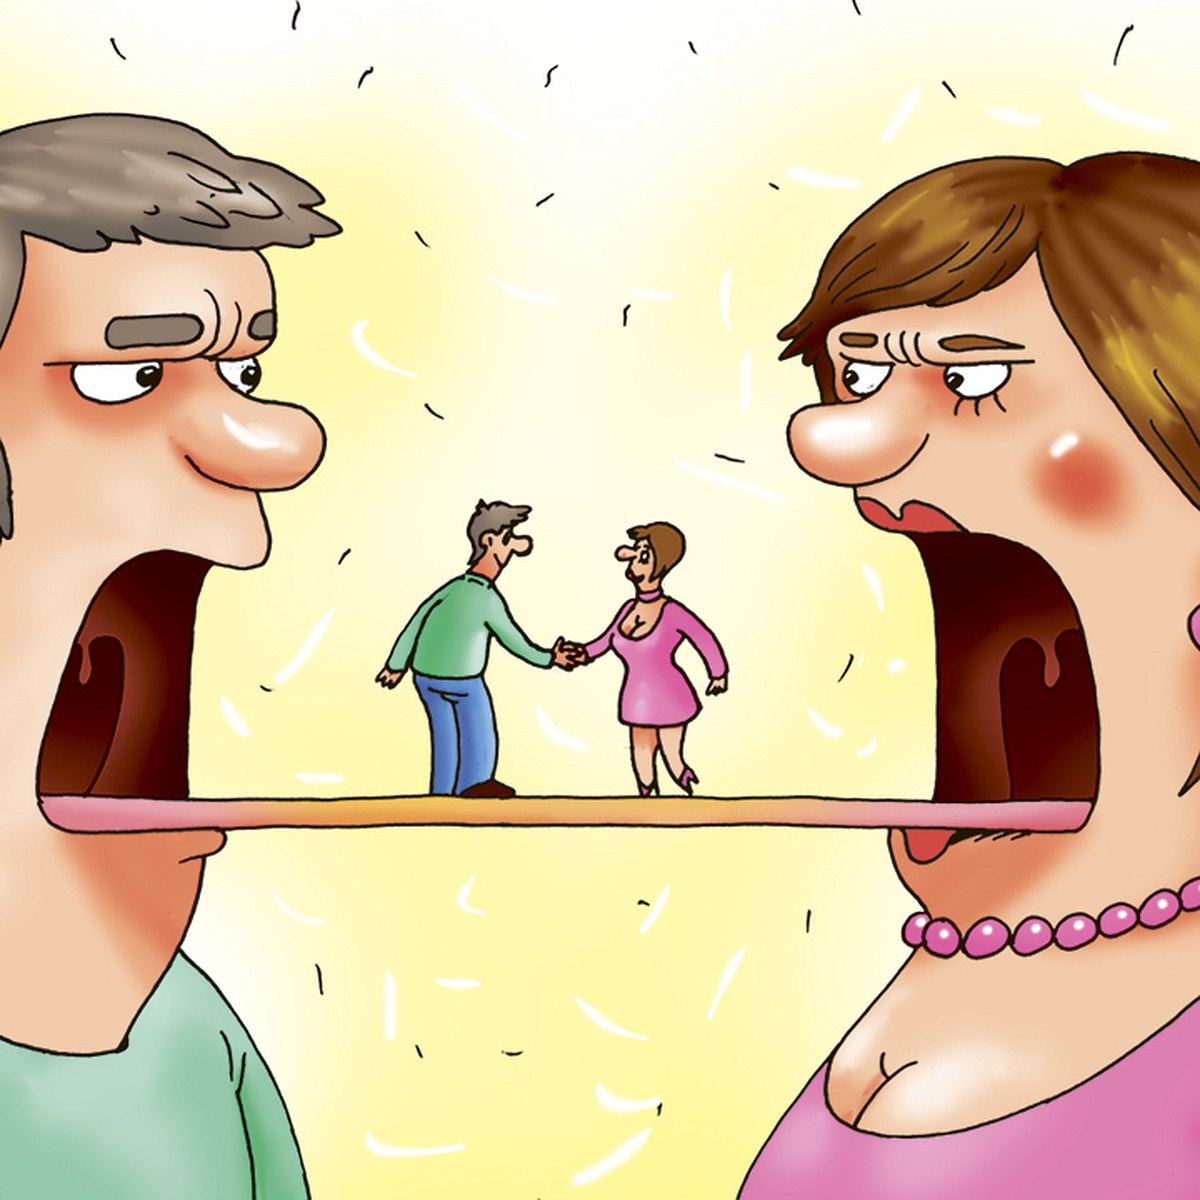 12 вещей, которые нельзя делать супругам вместе согласно приметам | Новости Гомеля